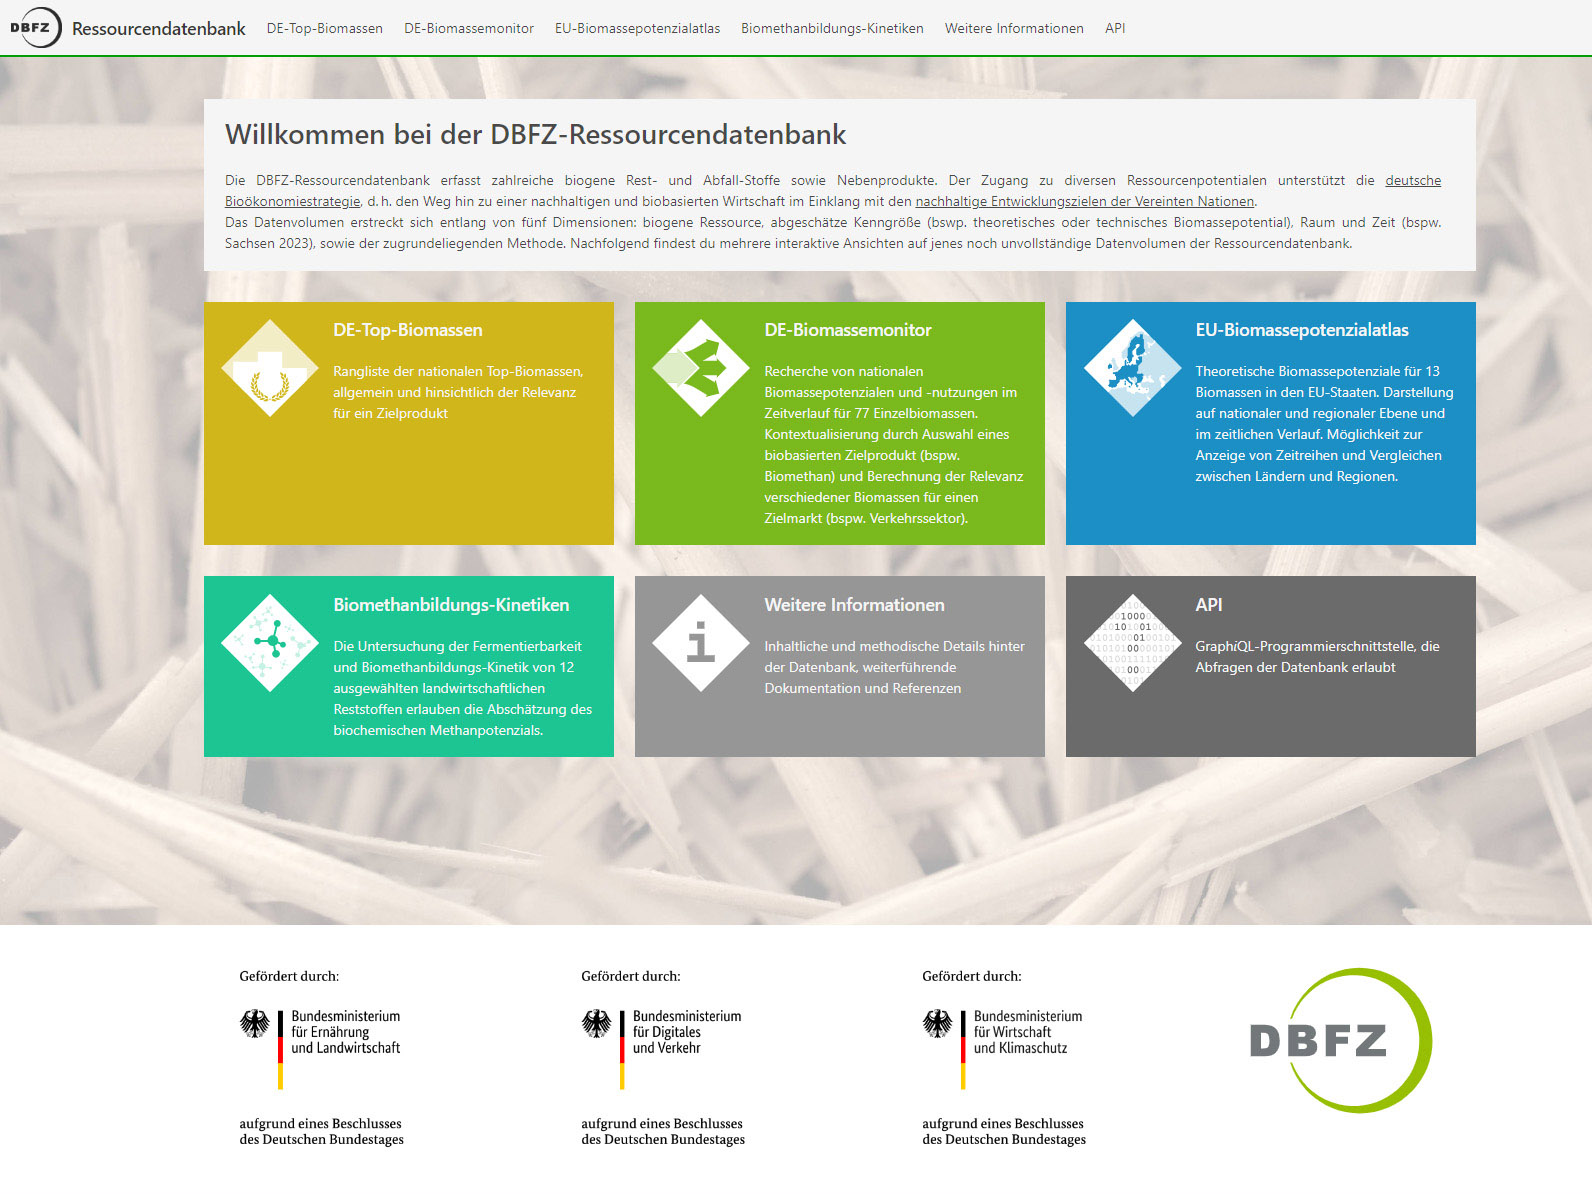 Ressourcendatenbank des DBFZ veröffentlicht